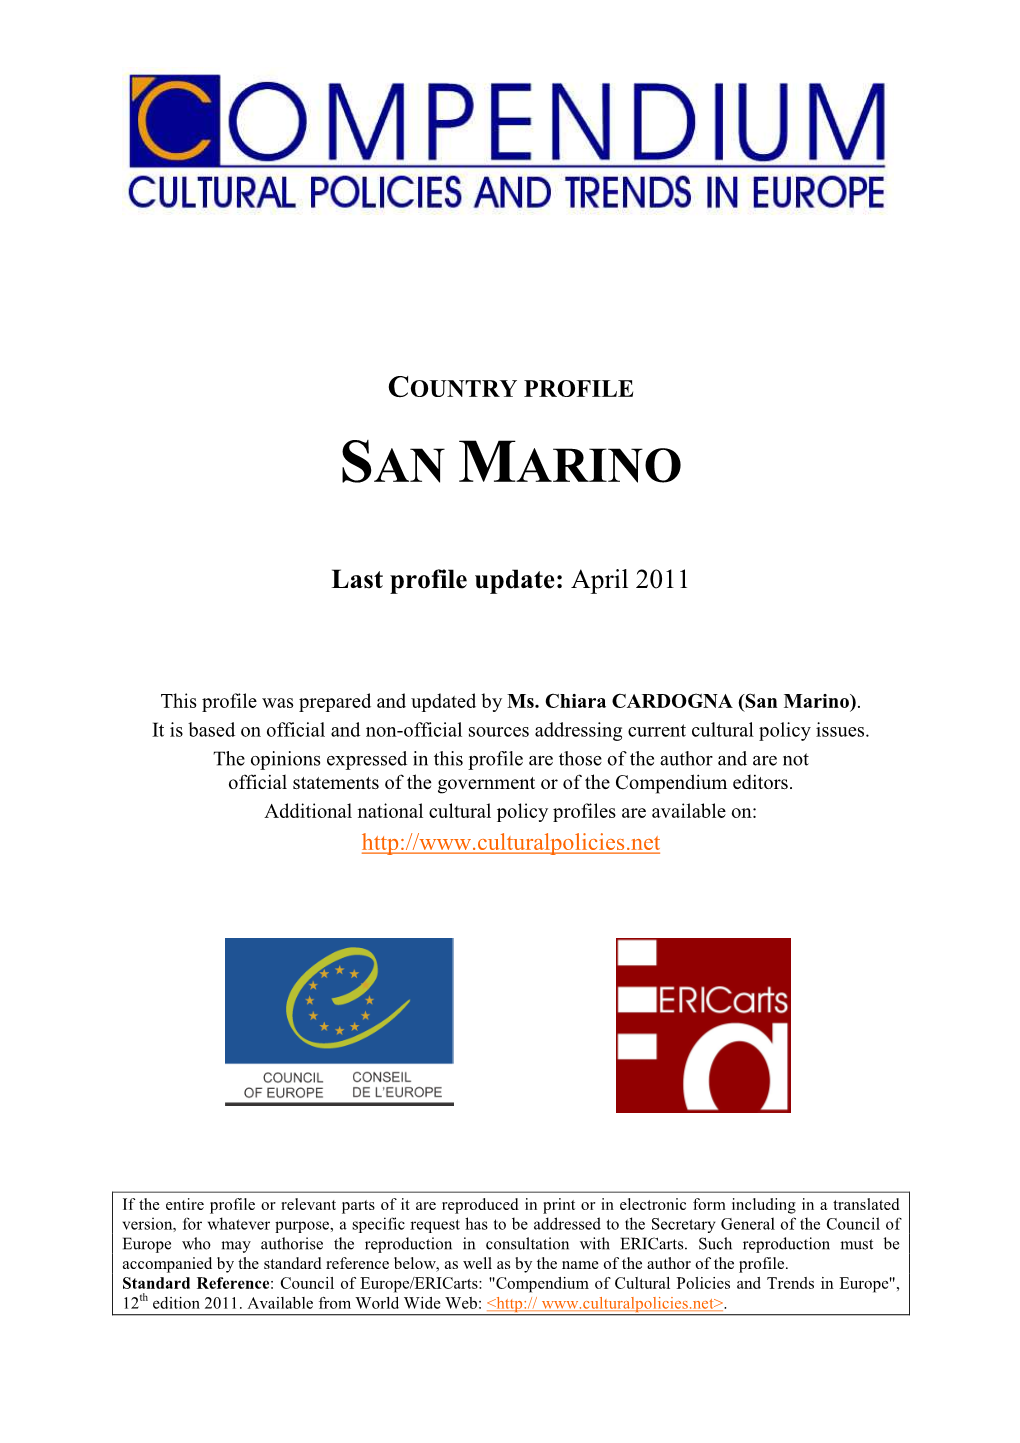 San Marino Cultural Policies 2011